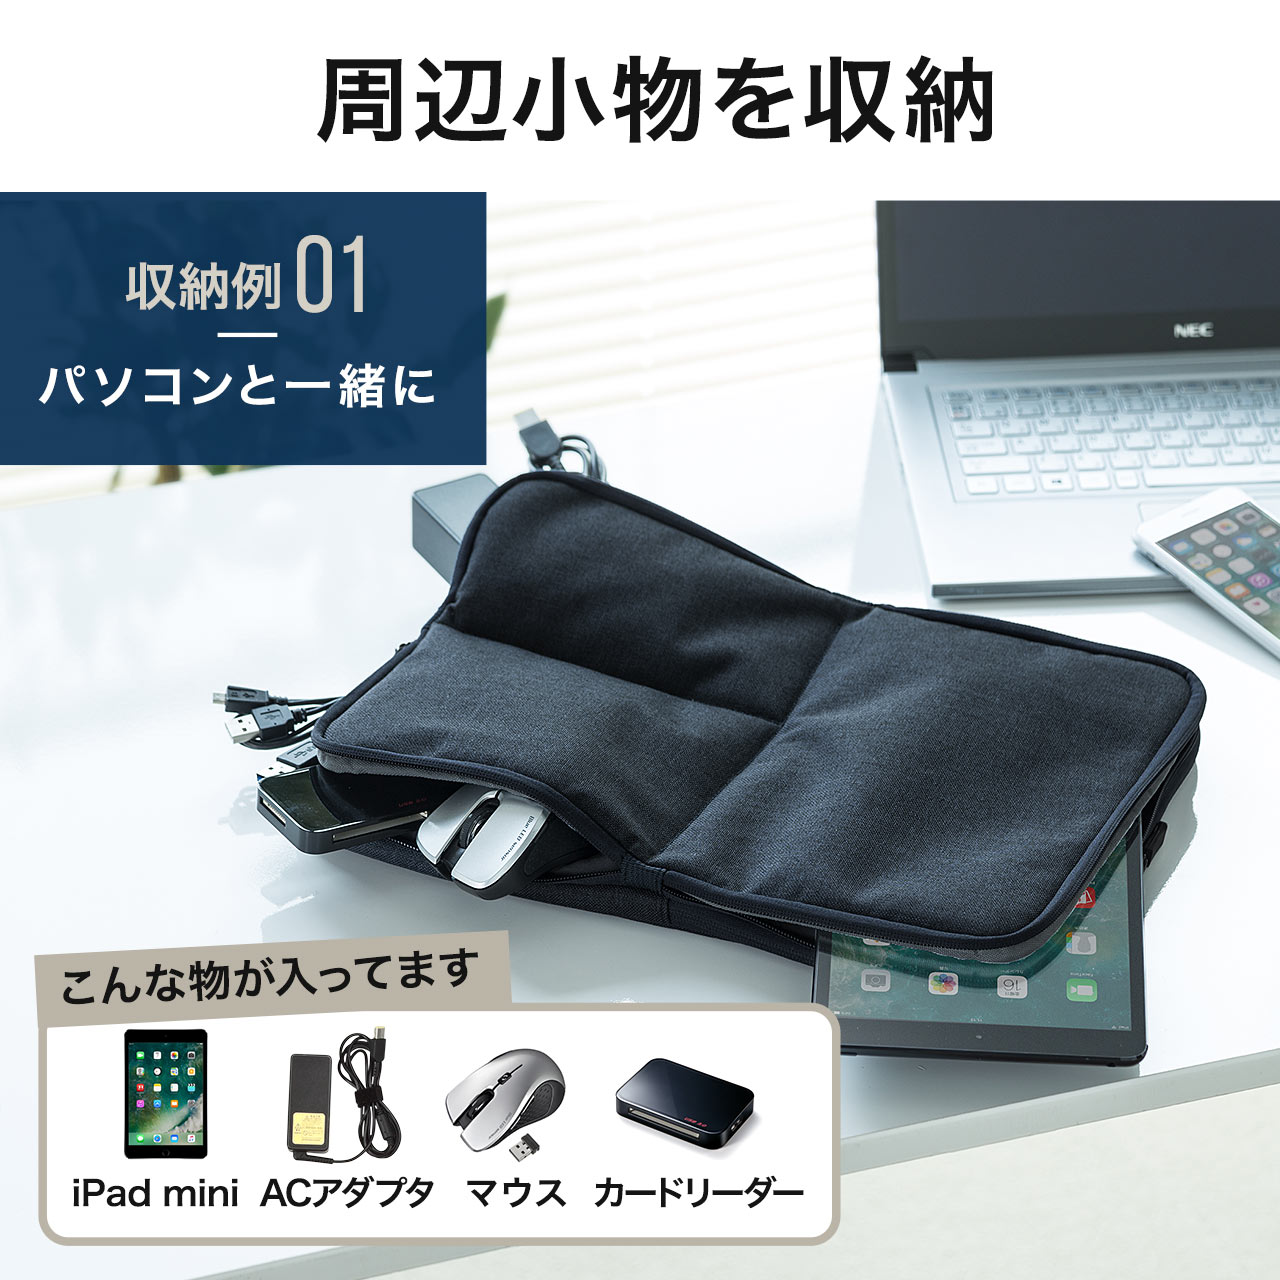 ノートパソコン インナーケース 13.3インチ用 小物ポケット付き 両面収納 ネイビー 200-IN050NV